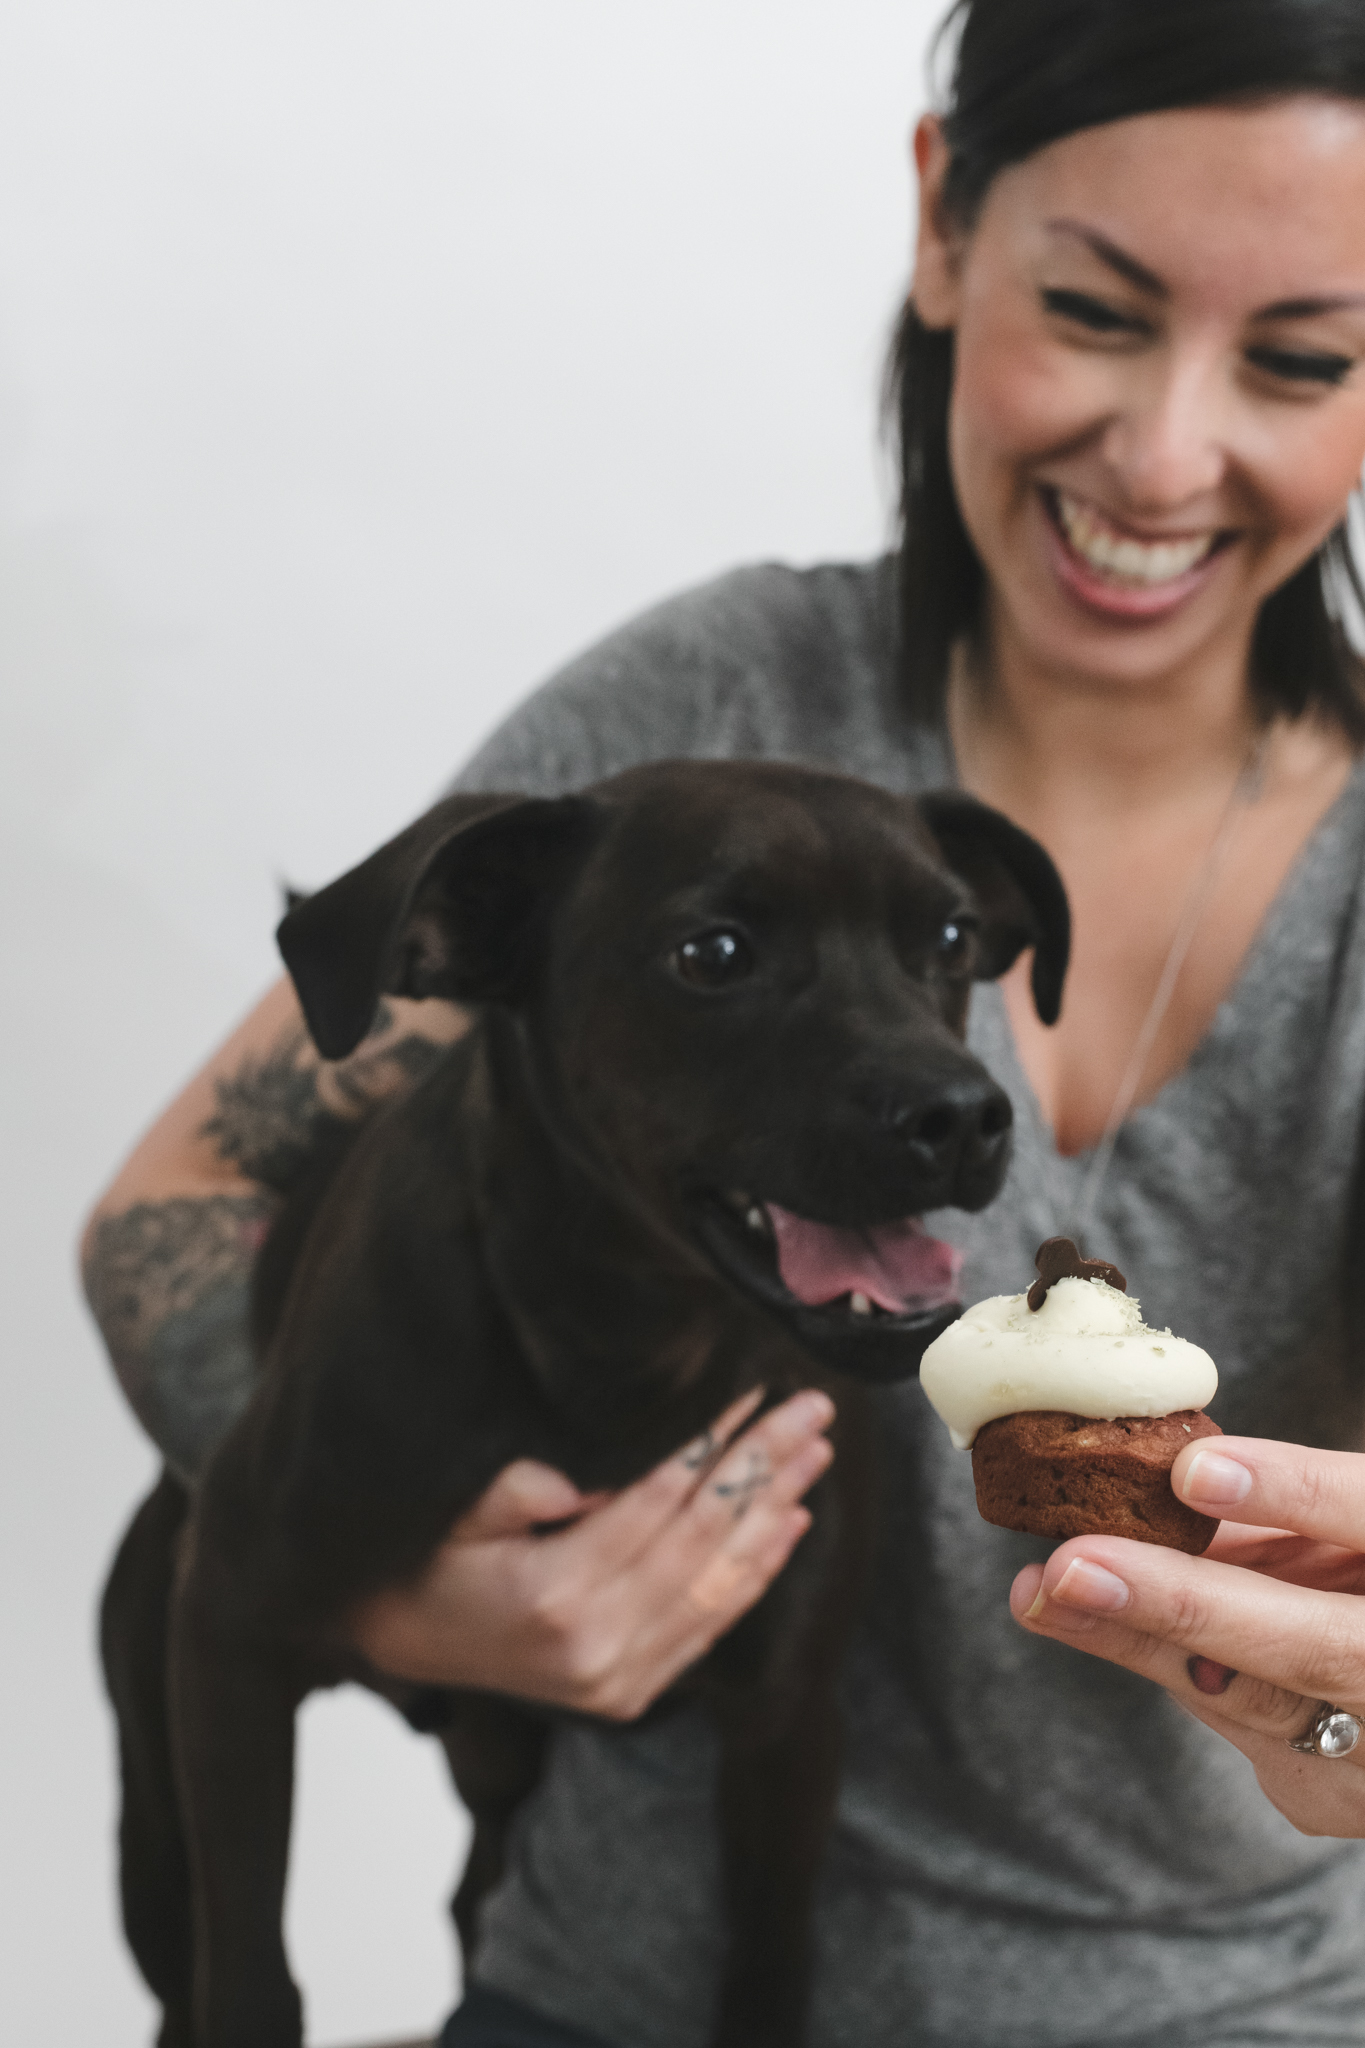 Ontario SPCA, cupcake Day, cupcakes, cupcake, baking tips, national cupcake day, ontario SPCA